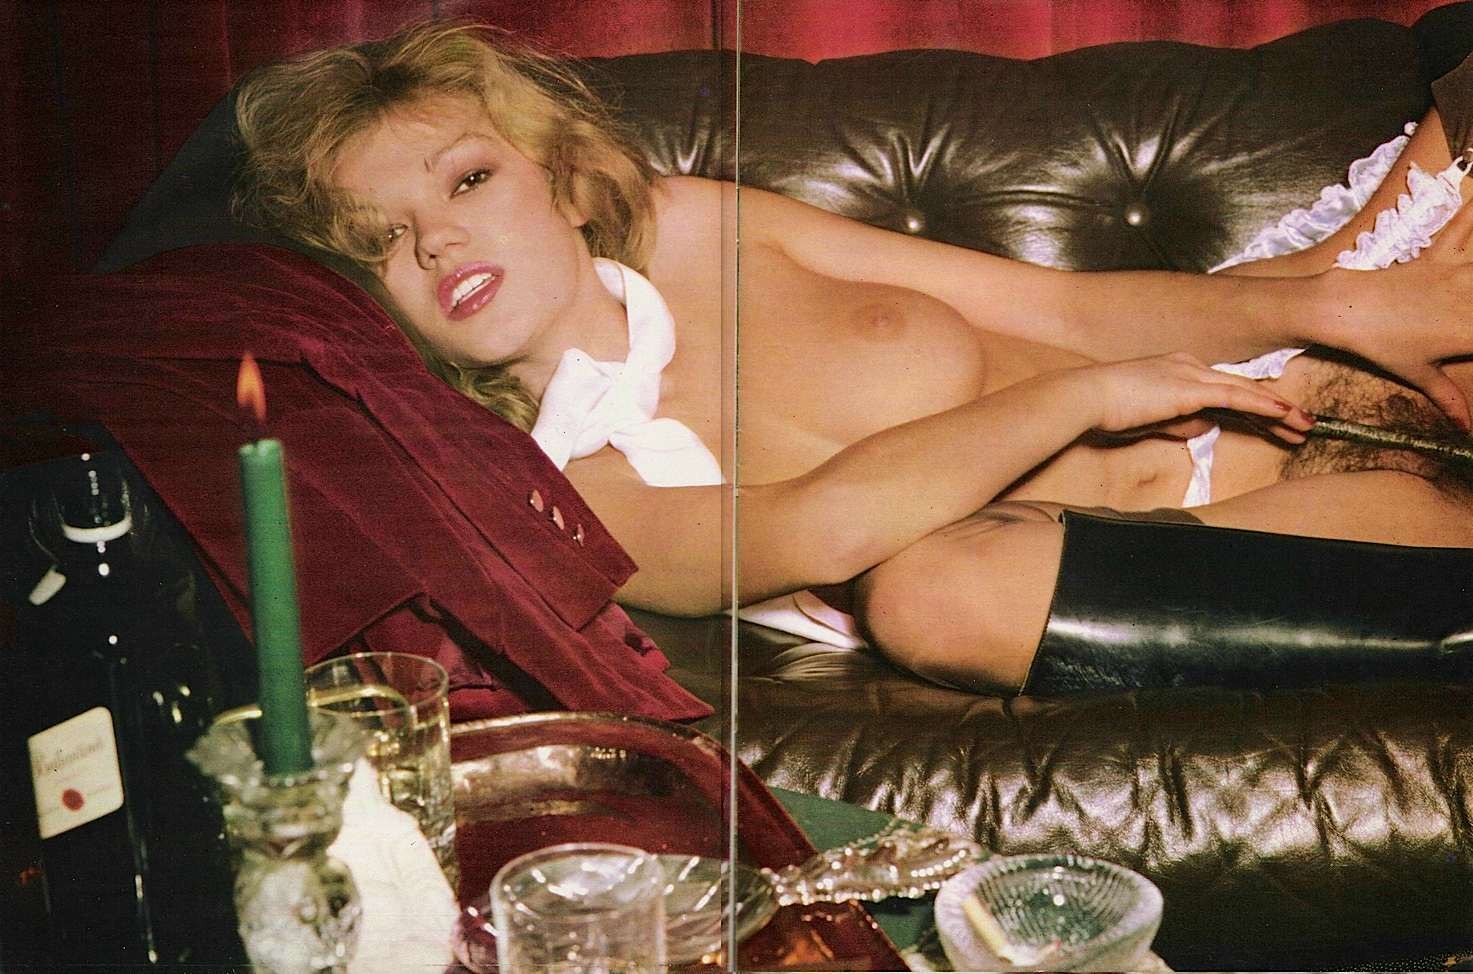 Brigitte Lahaie Vintage Xxx Pics Porn Pictures Xxx Photos Sex Images 3057101 Pictoa